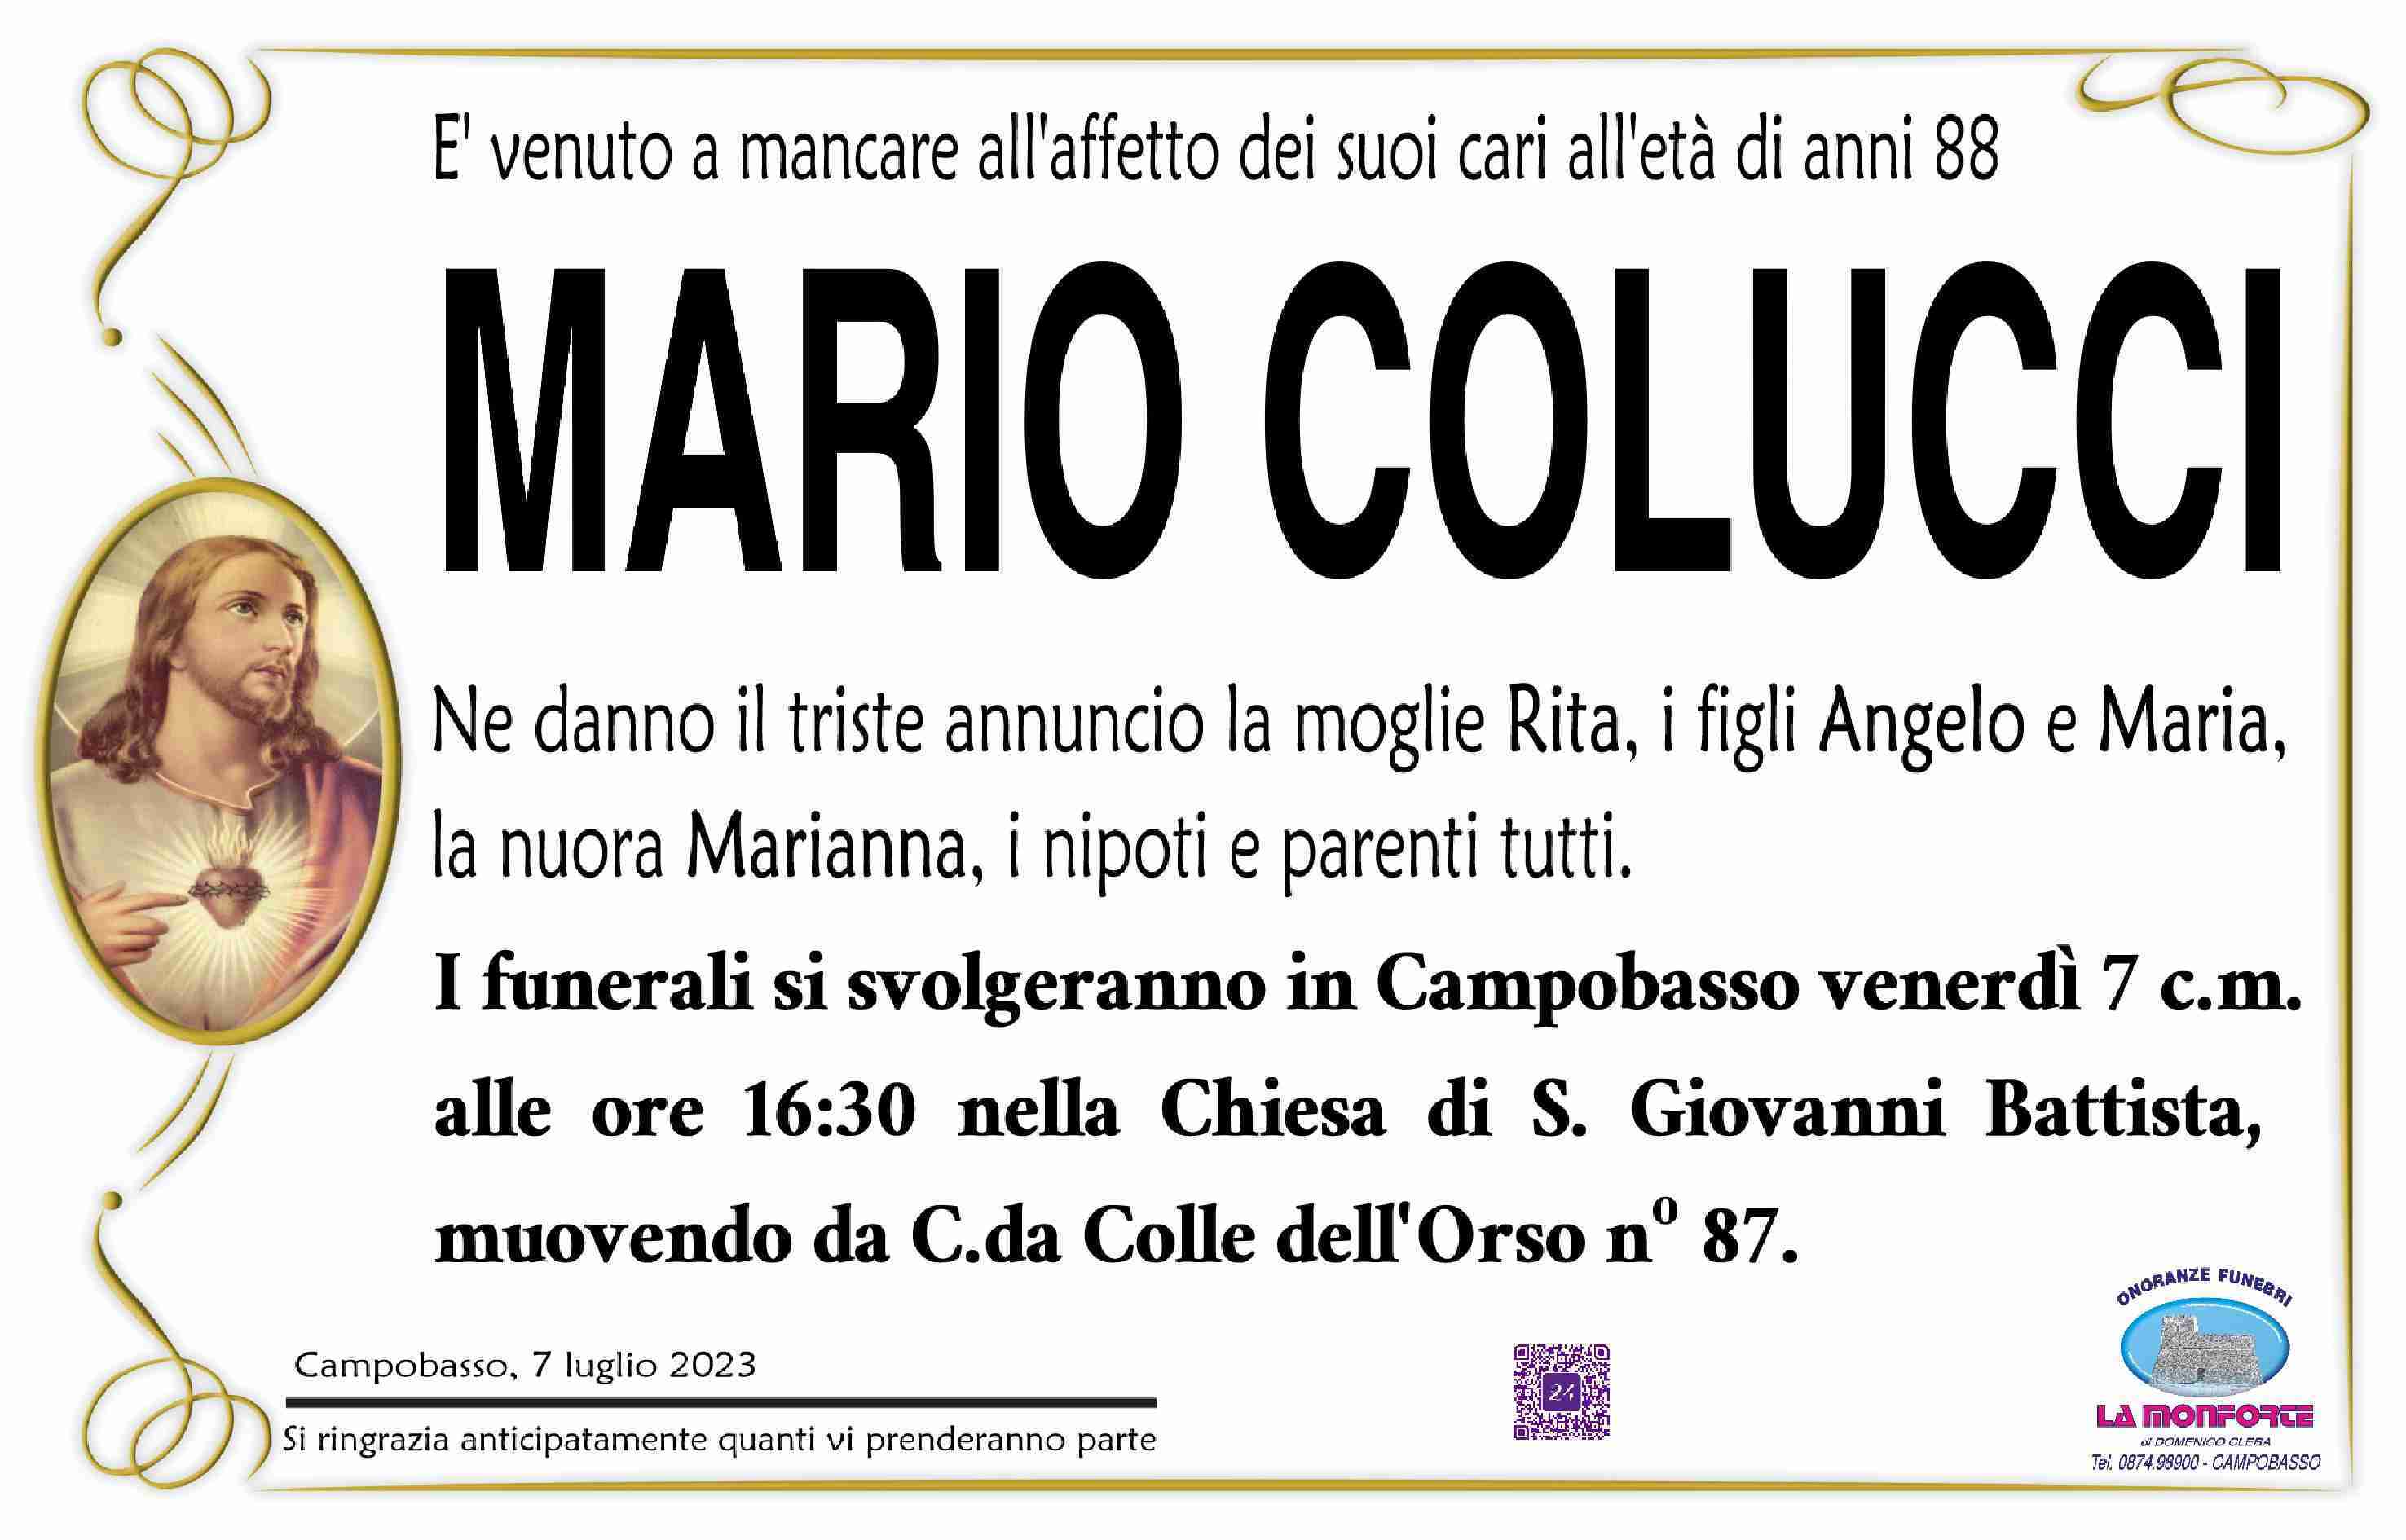 Mario Colucci